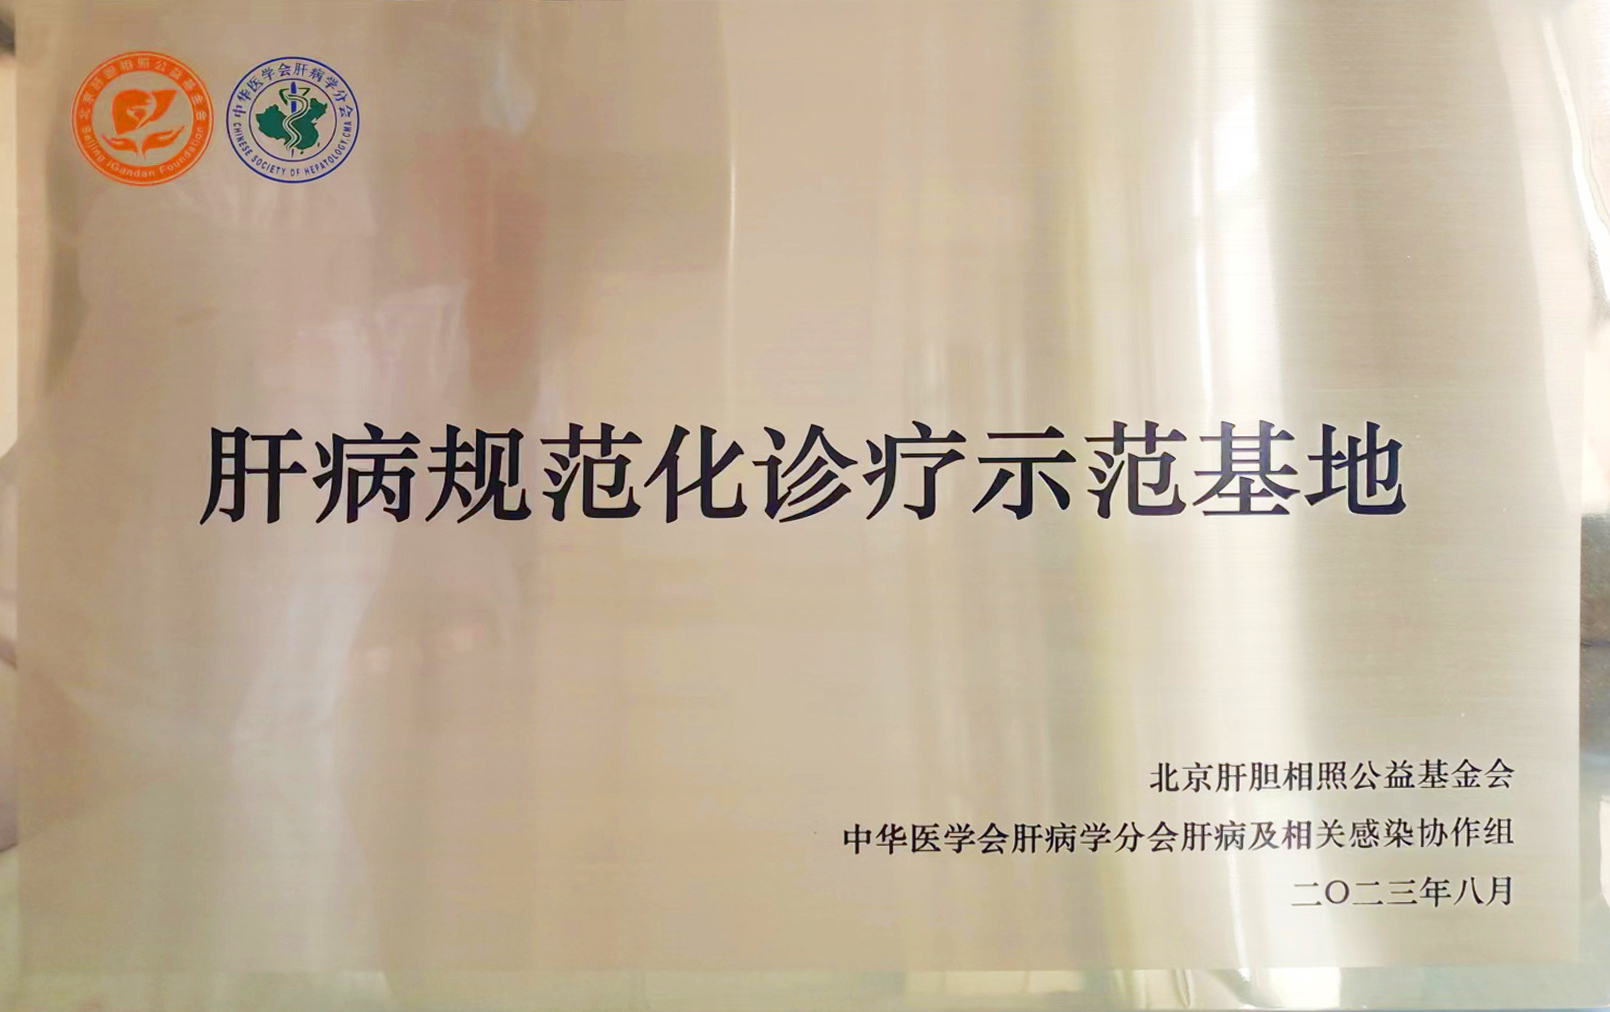 秦皇岛市第三医院被授牌肝病规范化诊疗示范基地